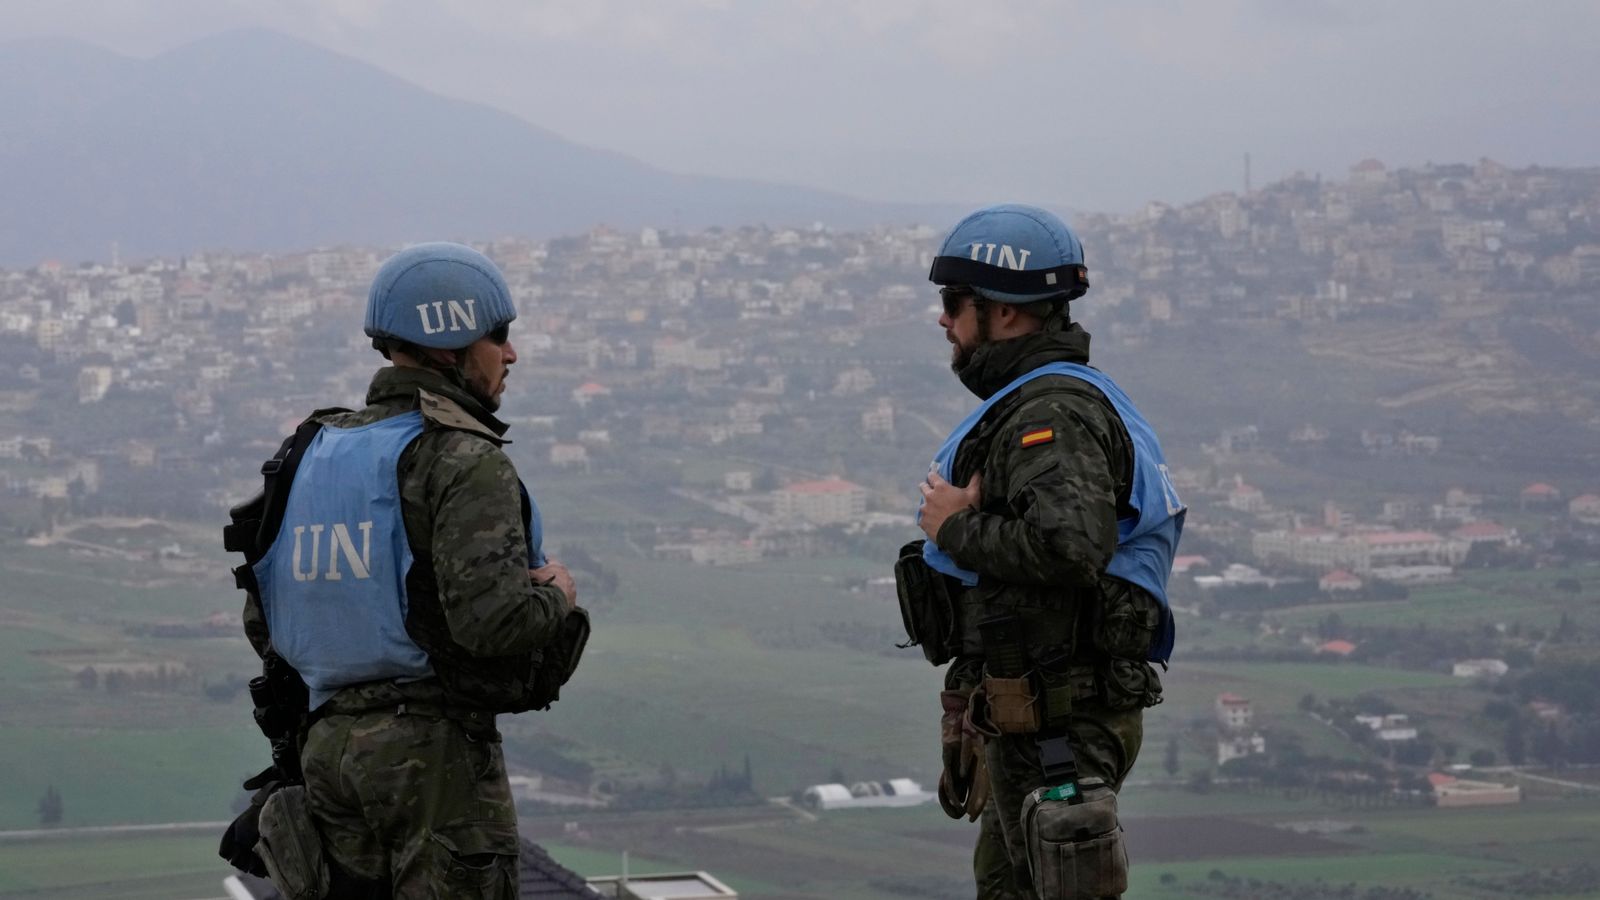 Plusieurs personnes blessées après l’explosion d’un obus près des observateurs de l’ONU dans le sud du Liban |  Nouvelles du monde